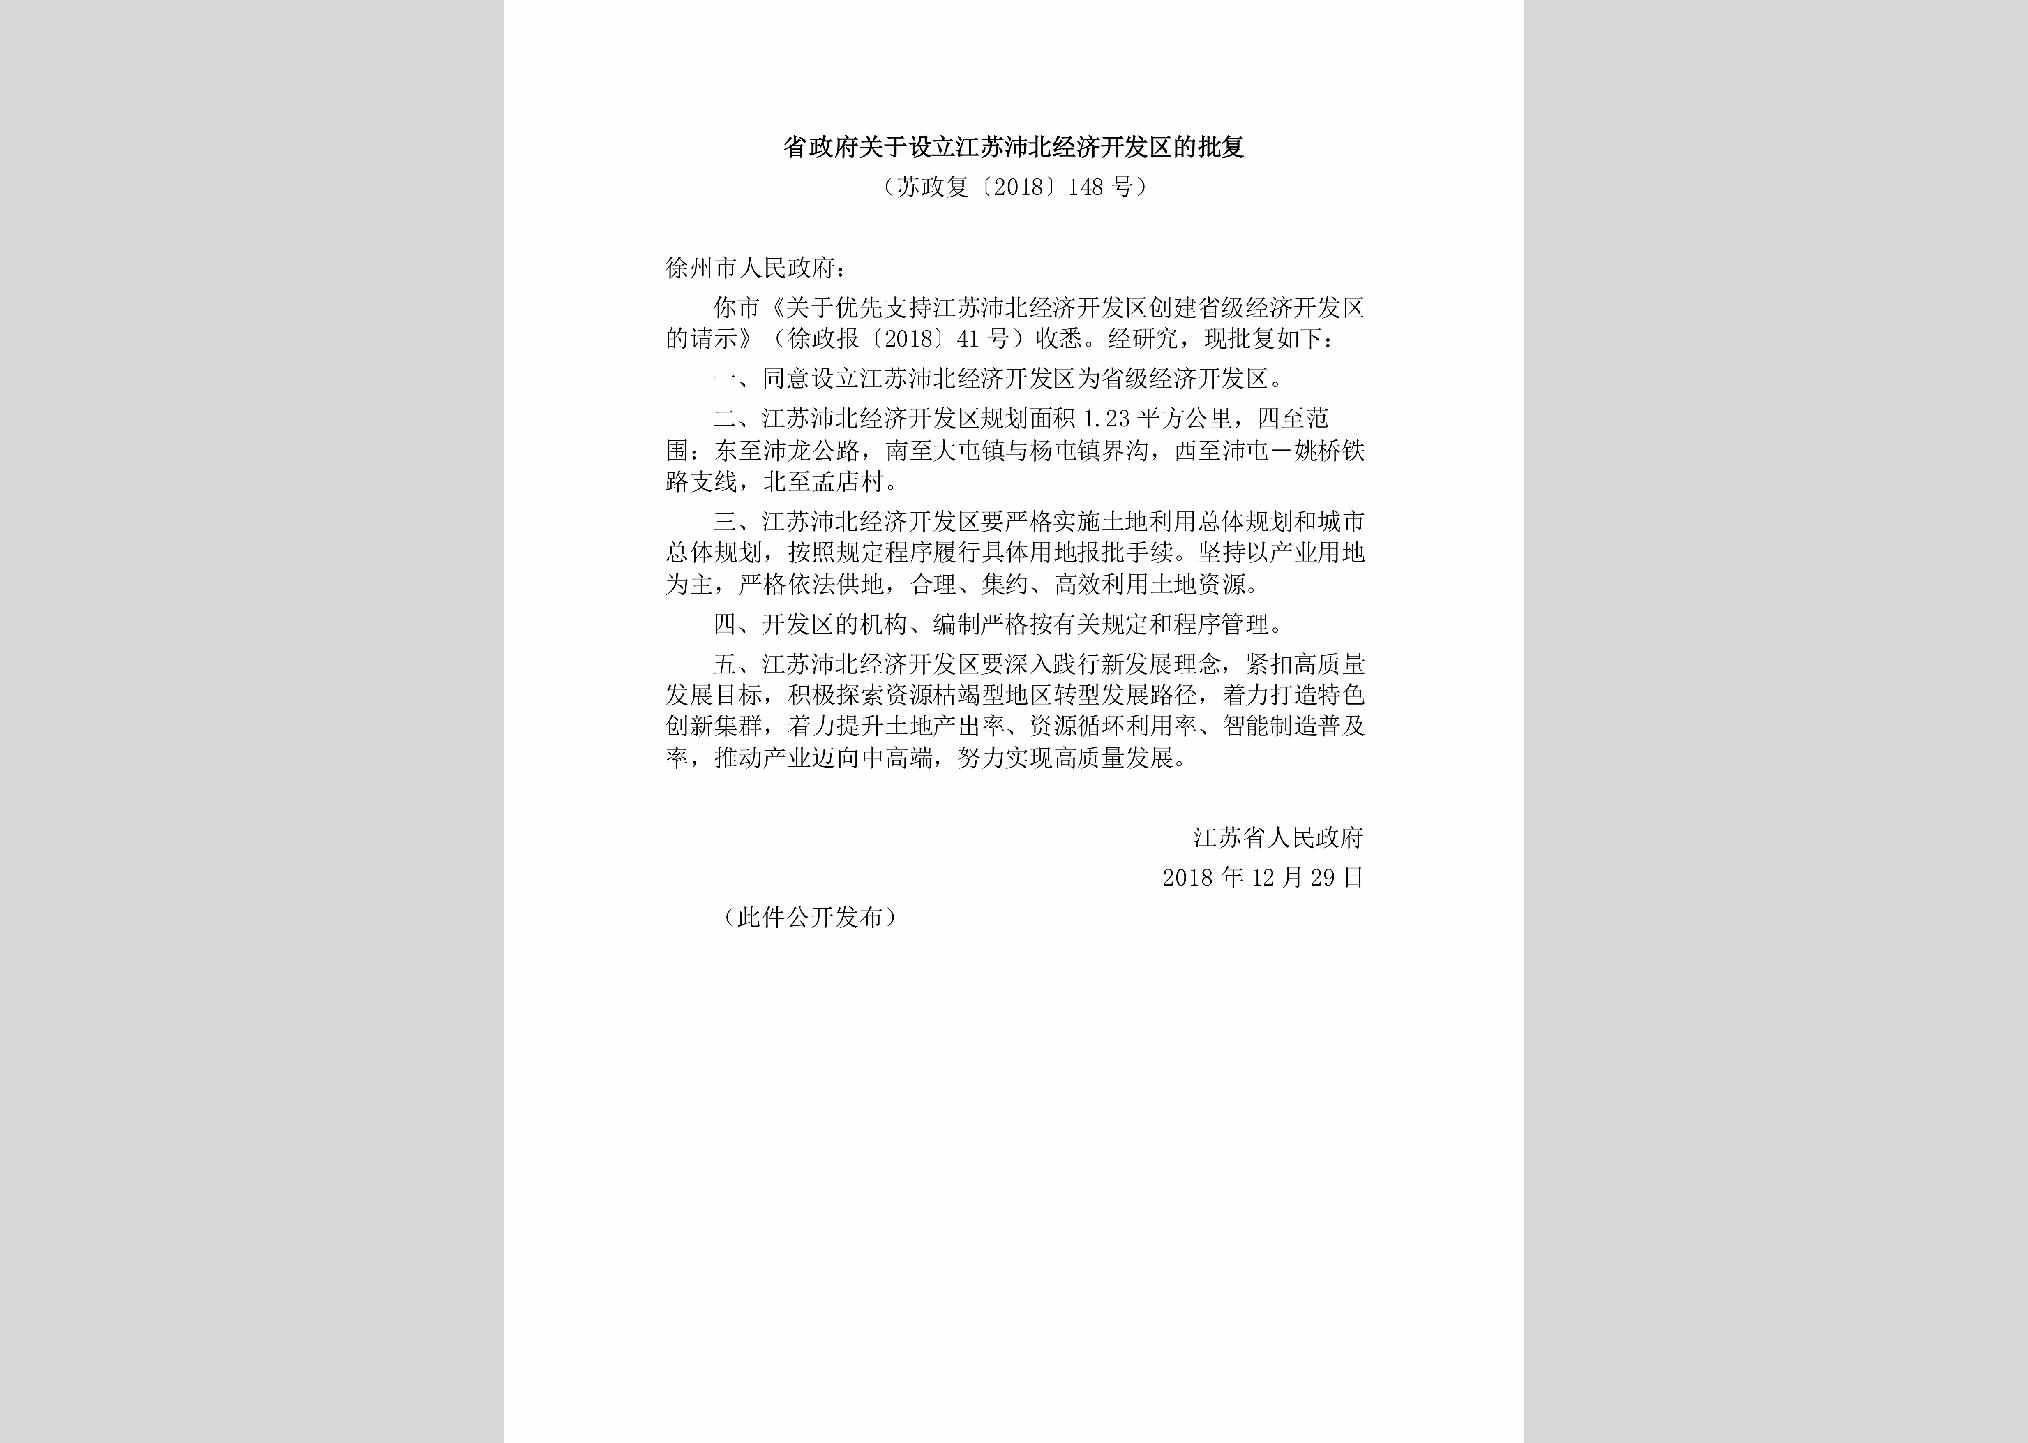 苏政复[2018]148号：省政府关于设立江苏沛北经济开发区的批复